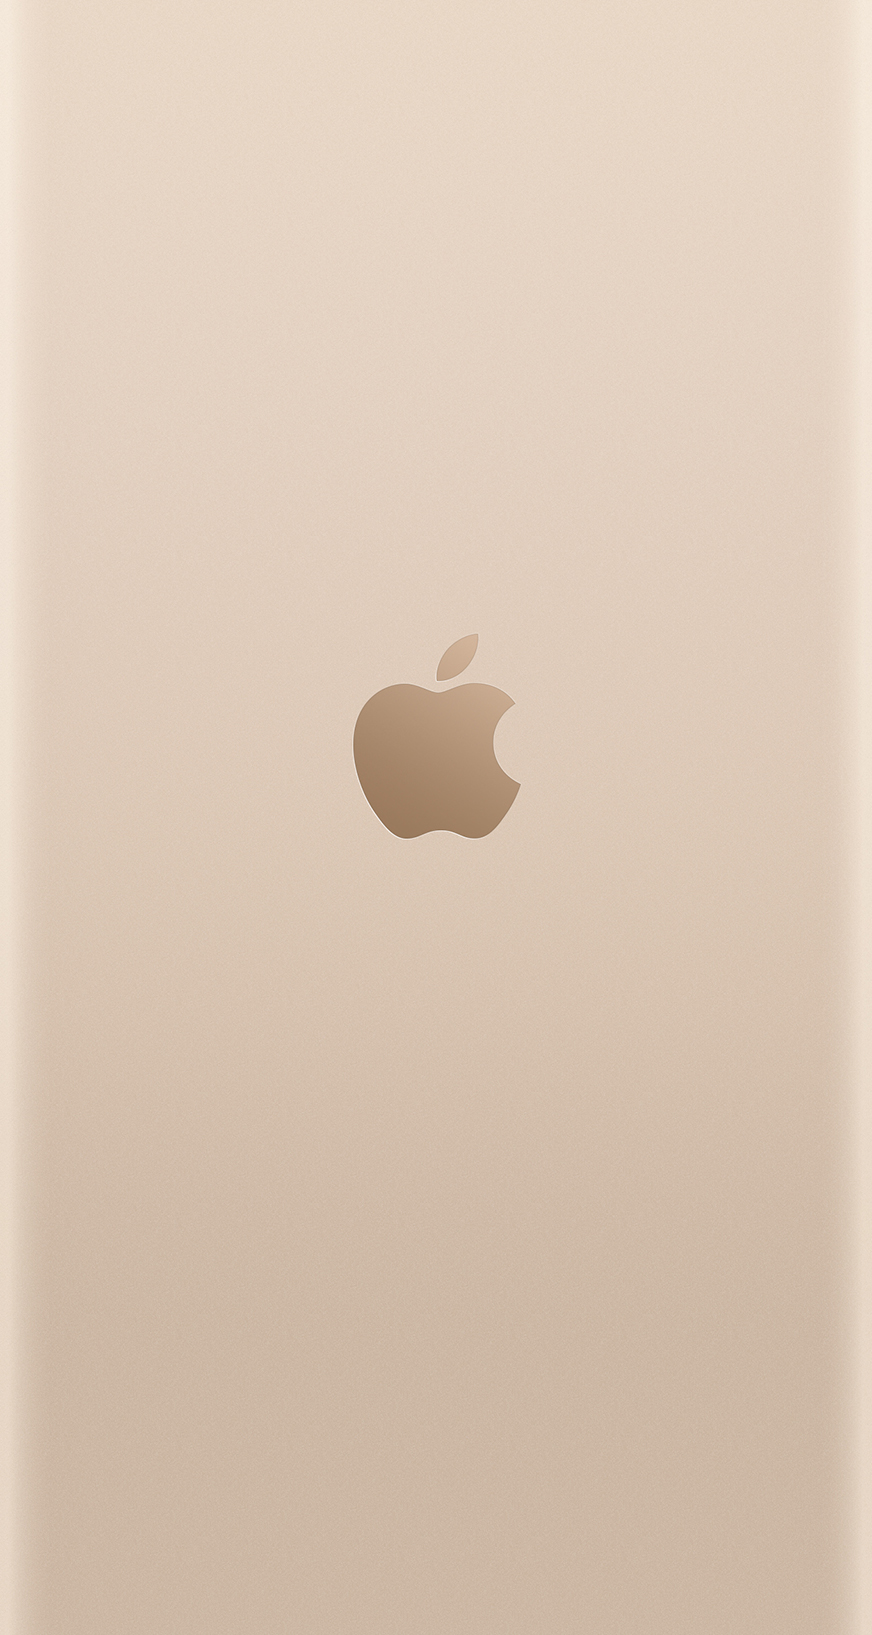 fond d'écran or iphone 6,blanc,beige,cœur,ipad,plante